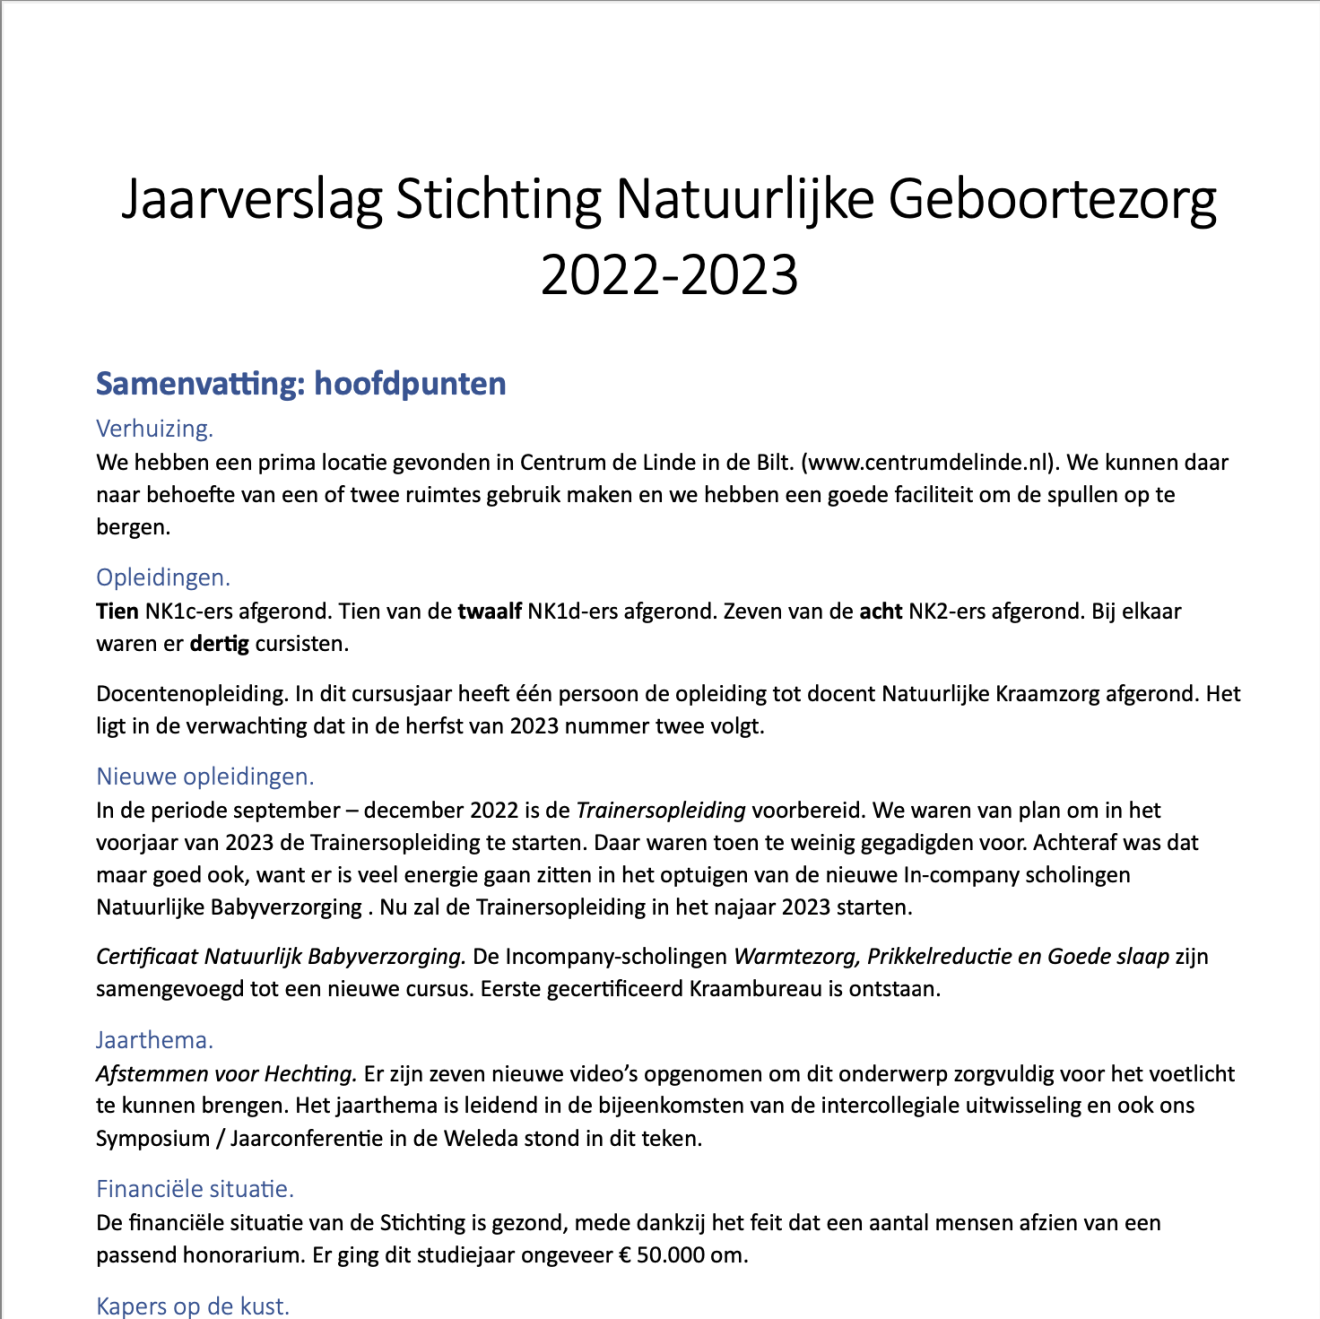 Jaarverslag - Stichting Natuurlijke Geboortezorg 2022-2023